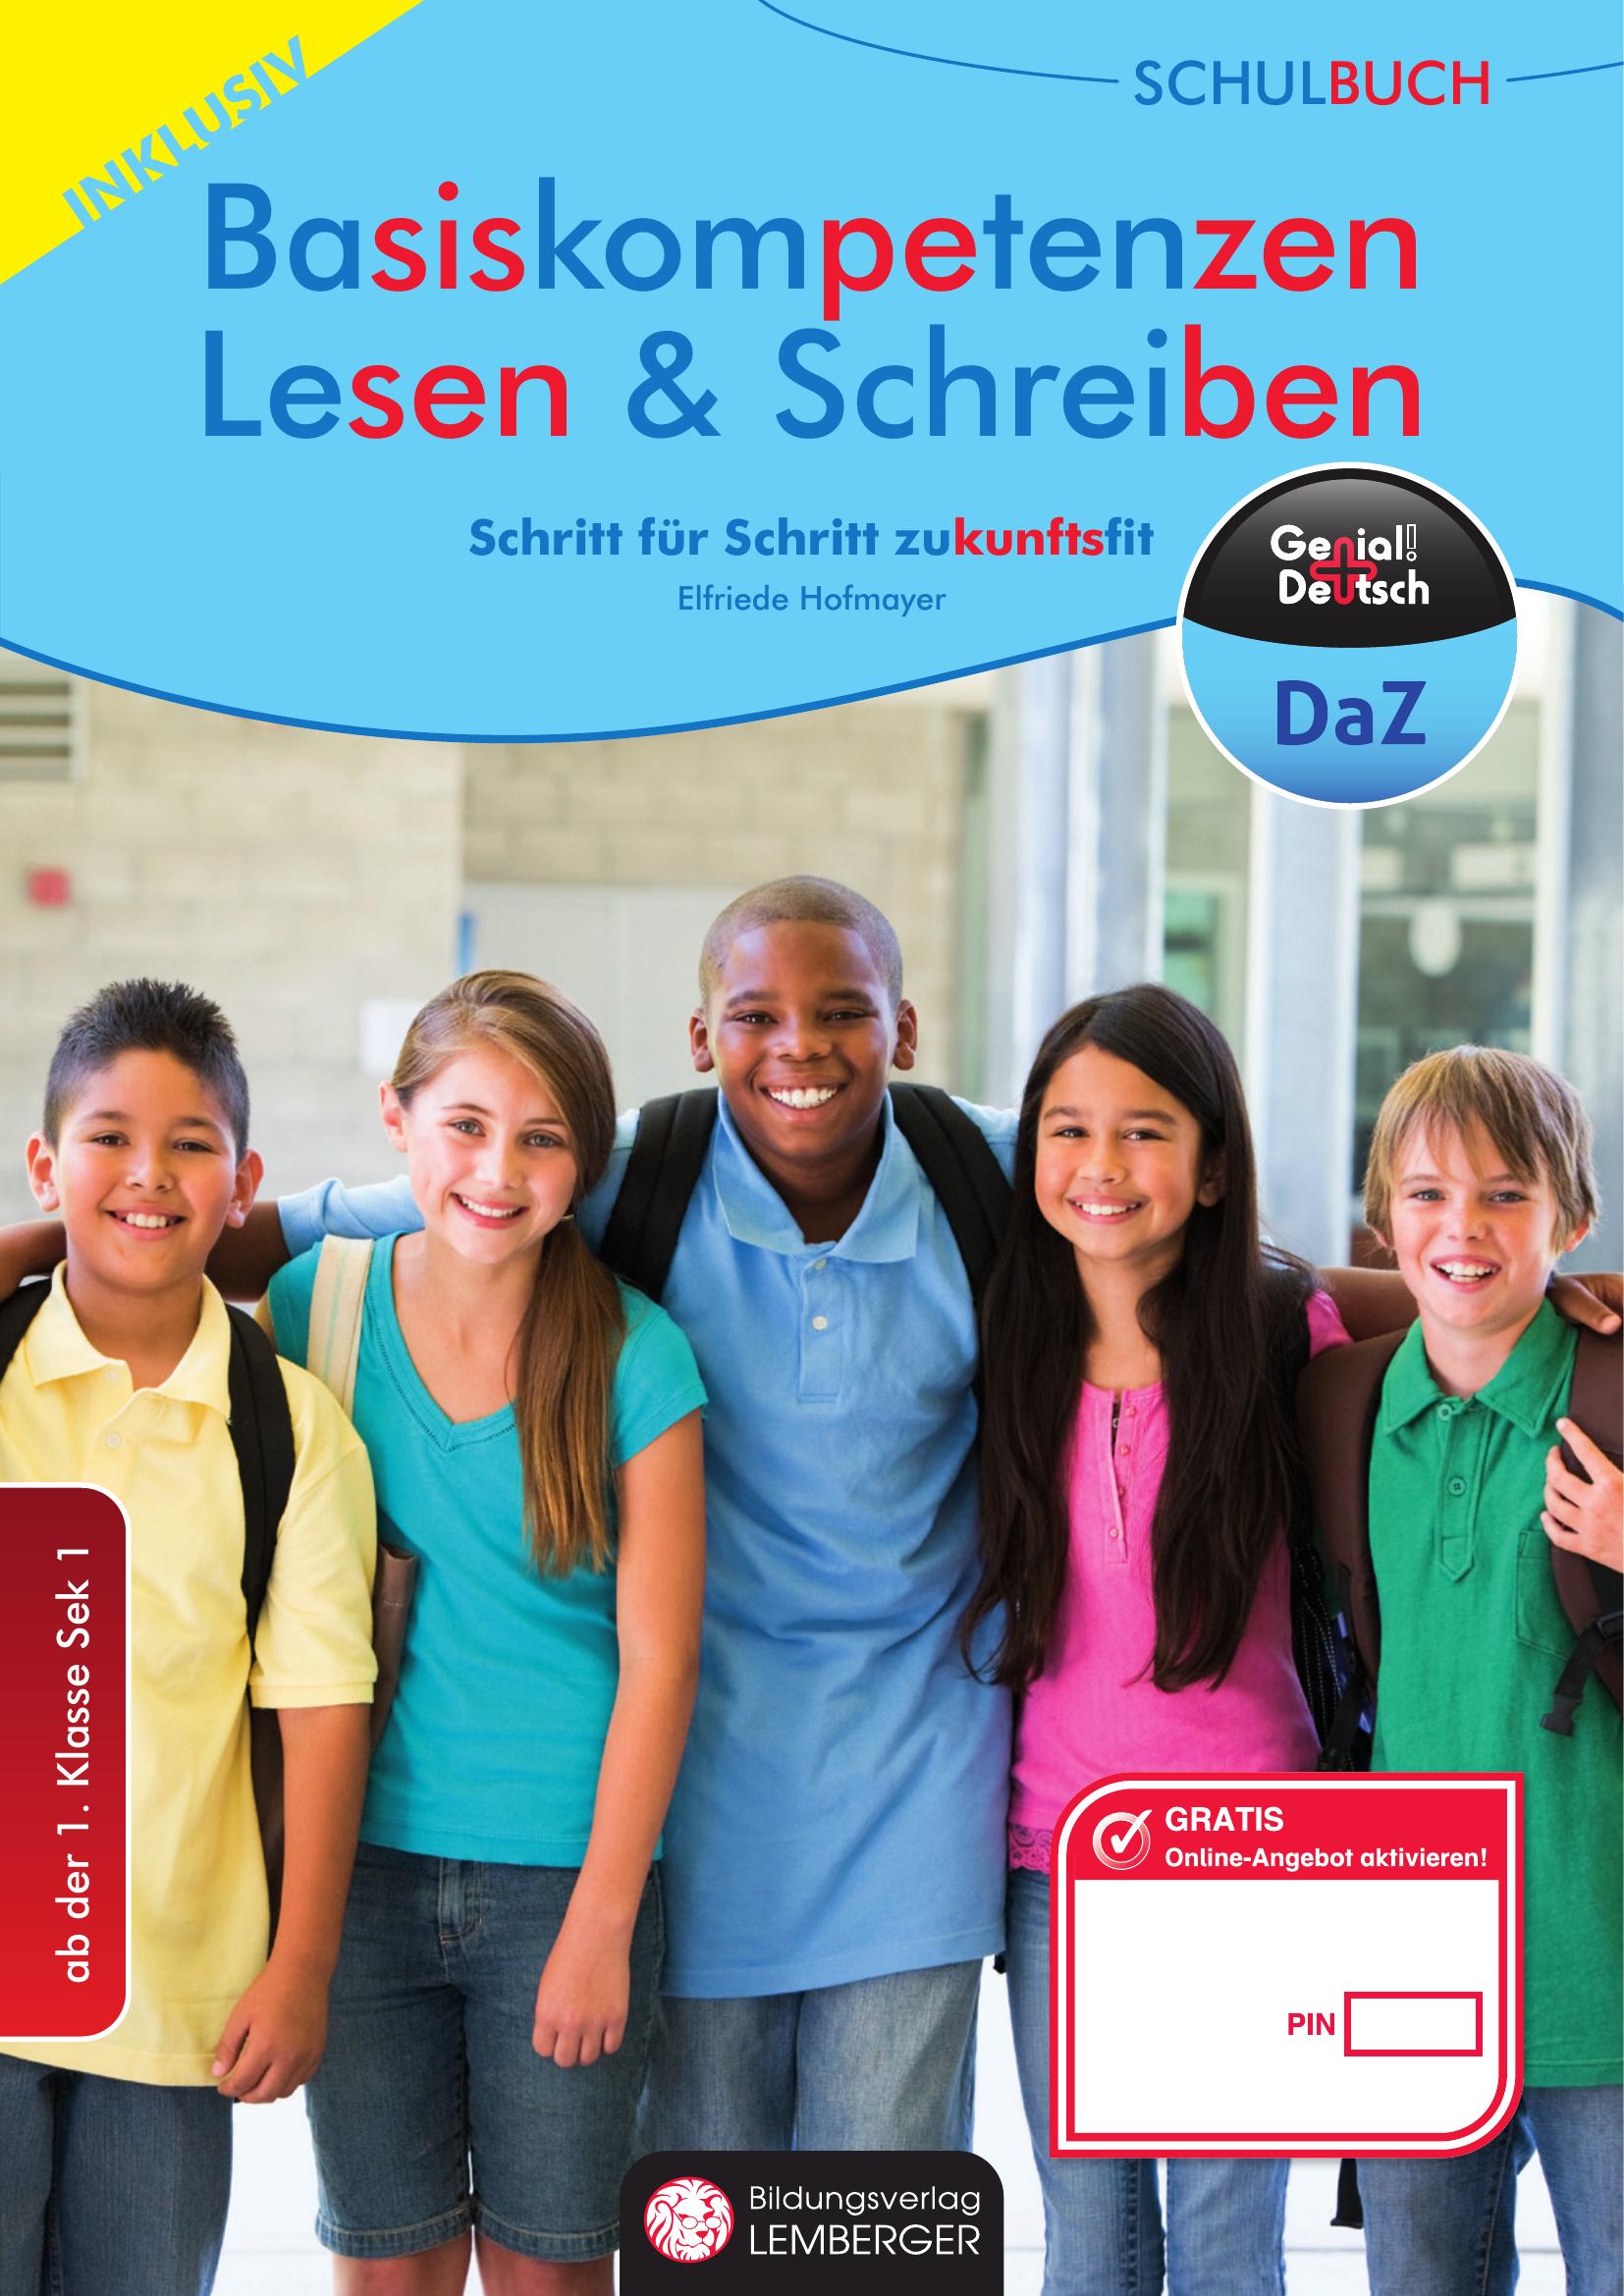 Genial! Deutsch DAZ - Schritt für Schritt zukunftsfit - Schulbuch: Basiskompetenzen Lesen und Schreiben